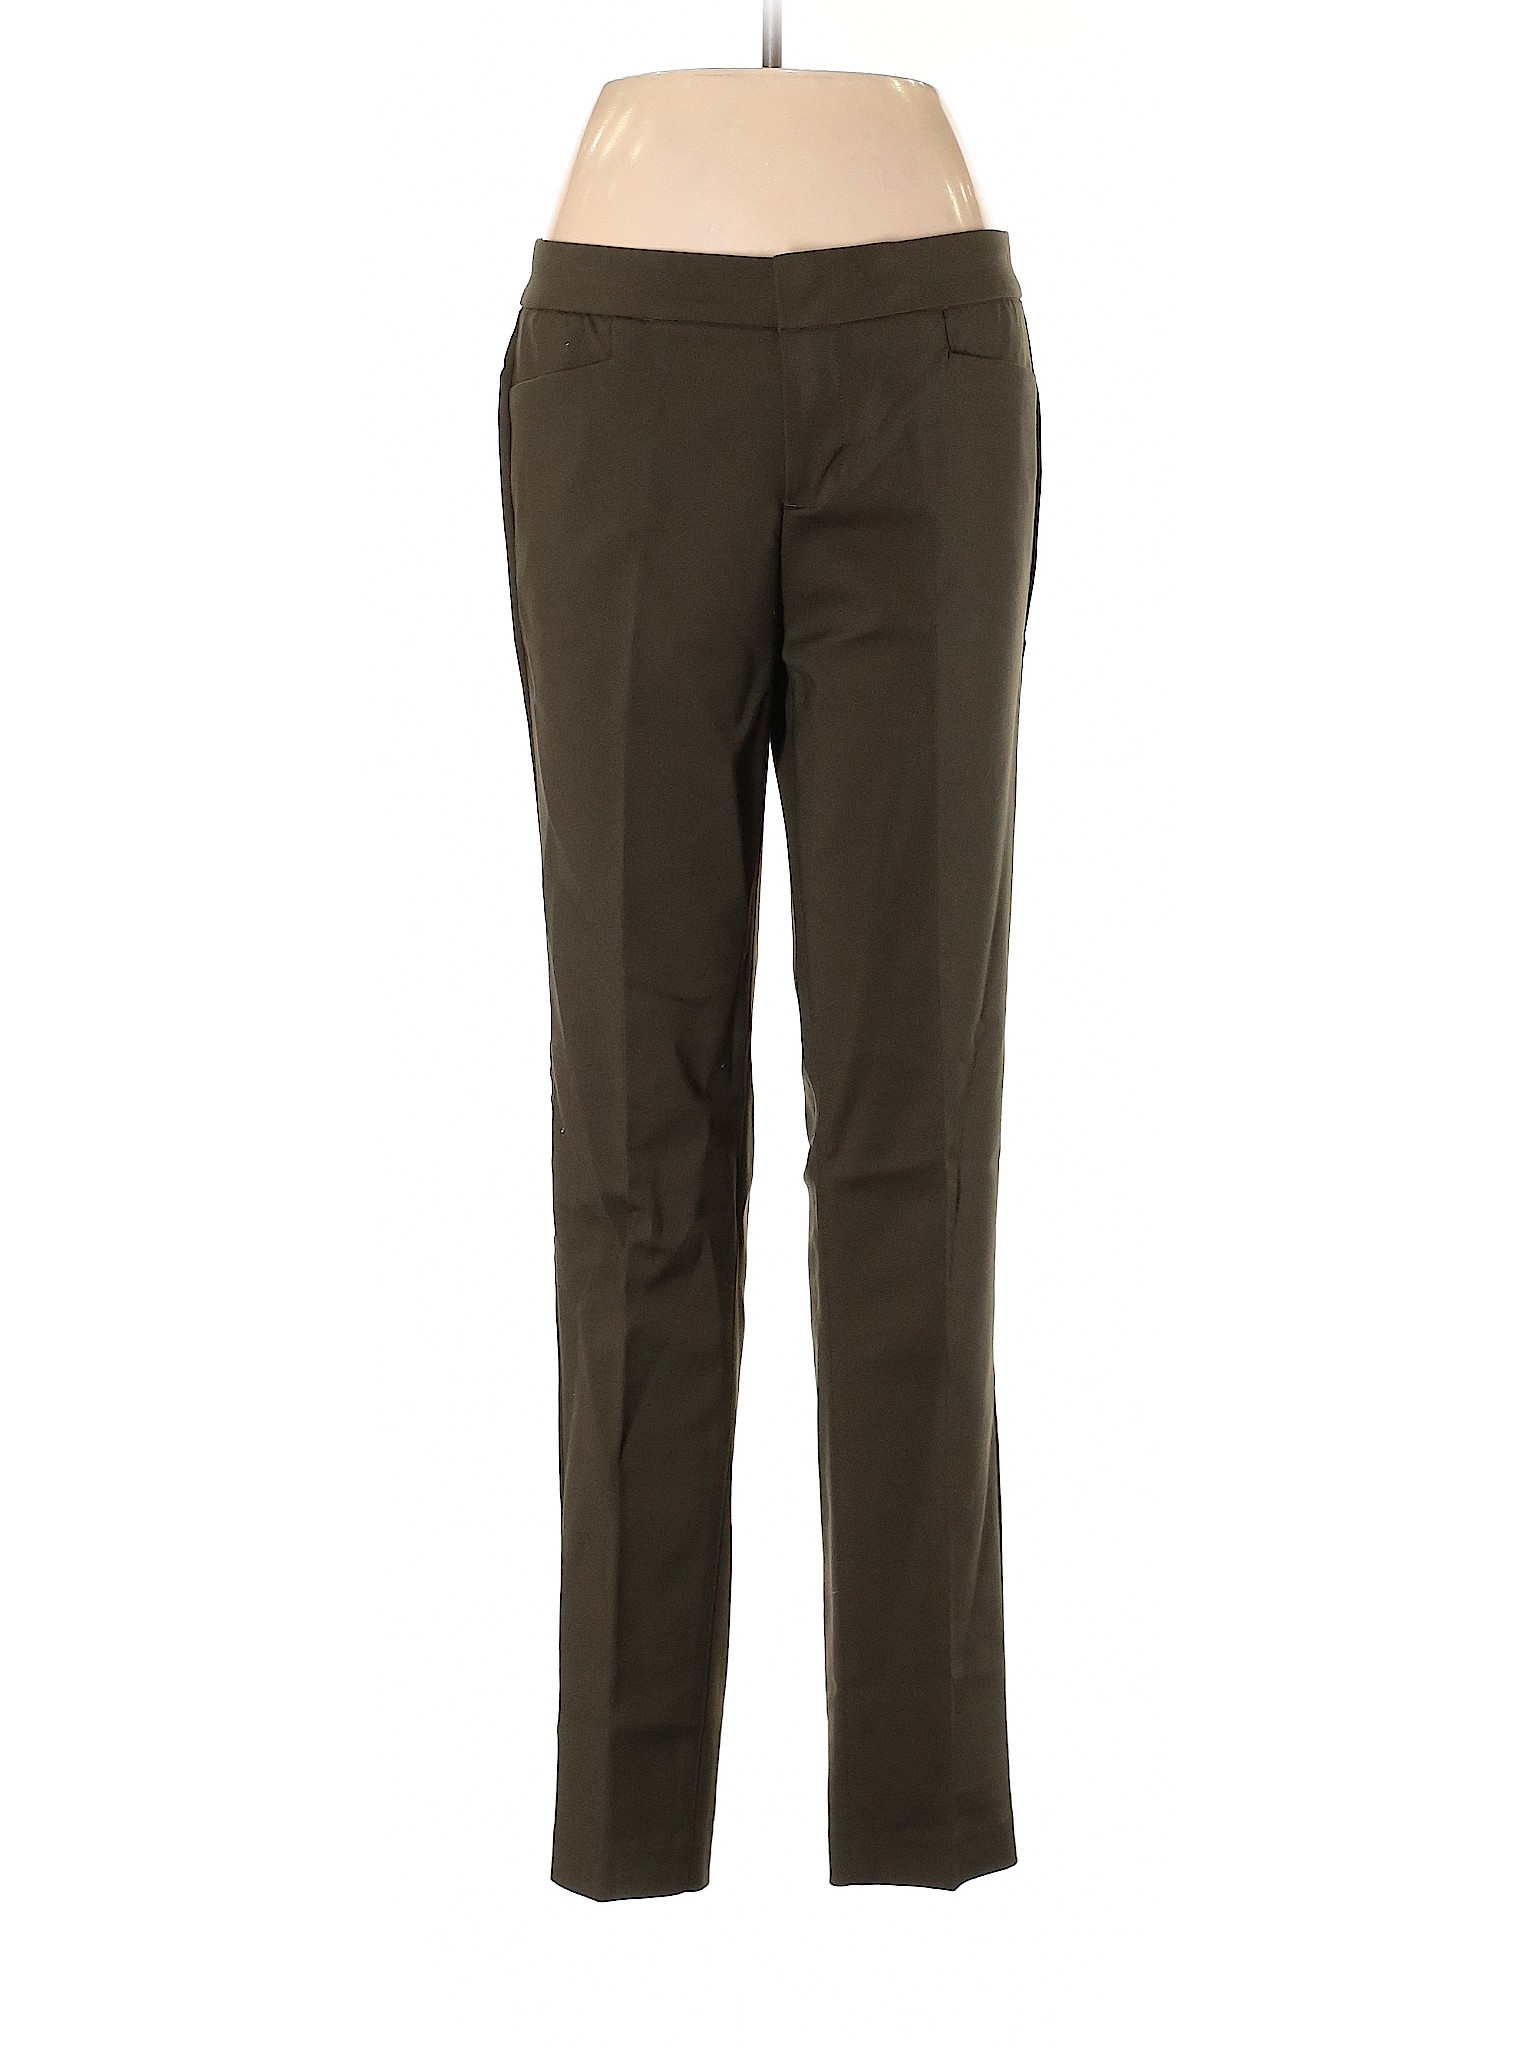 Crosby Women Green Dress Pants 6 | eBay